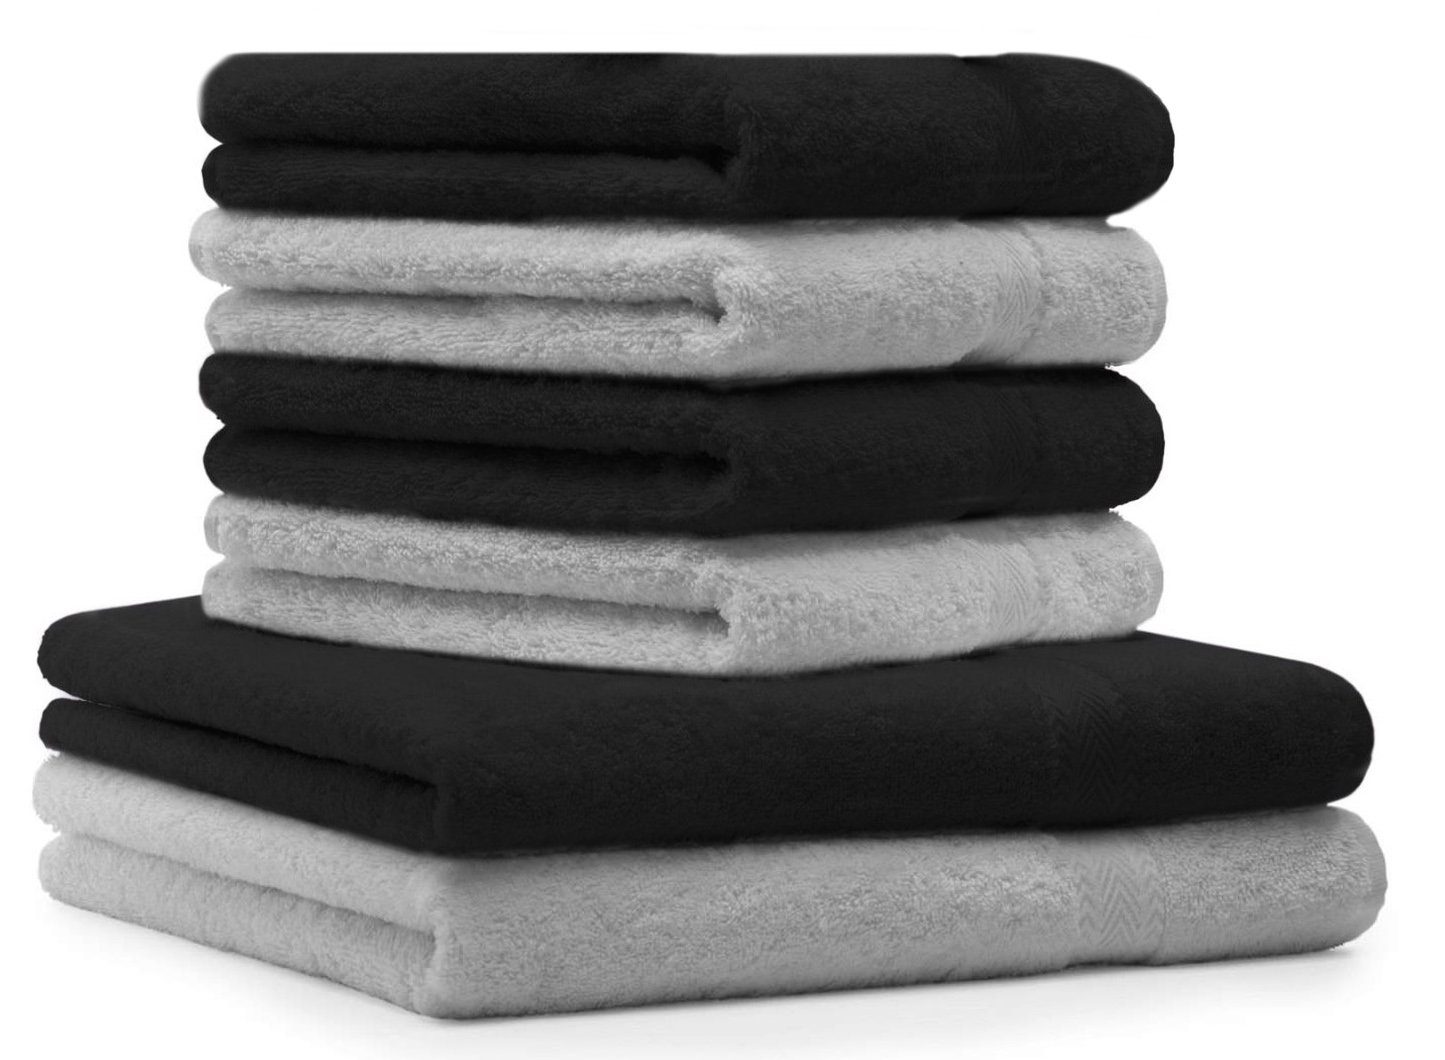 Betz Handtuch Set 6-TLG. Handtuch-Set Premium 100% Baumwolle 2 Duschtücher 4 Handtücher Farbe schwarz und Silbergrau, 100% Baumwolle | Handtuch-Sets